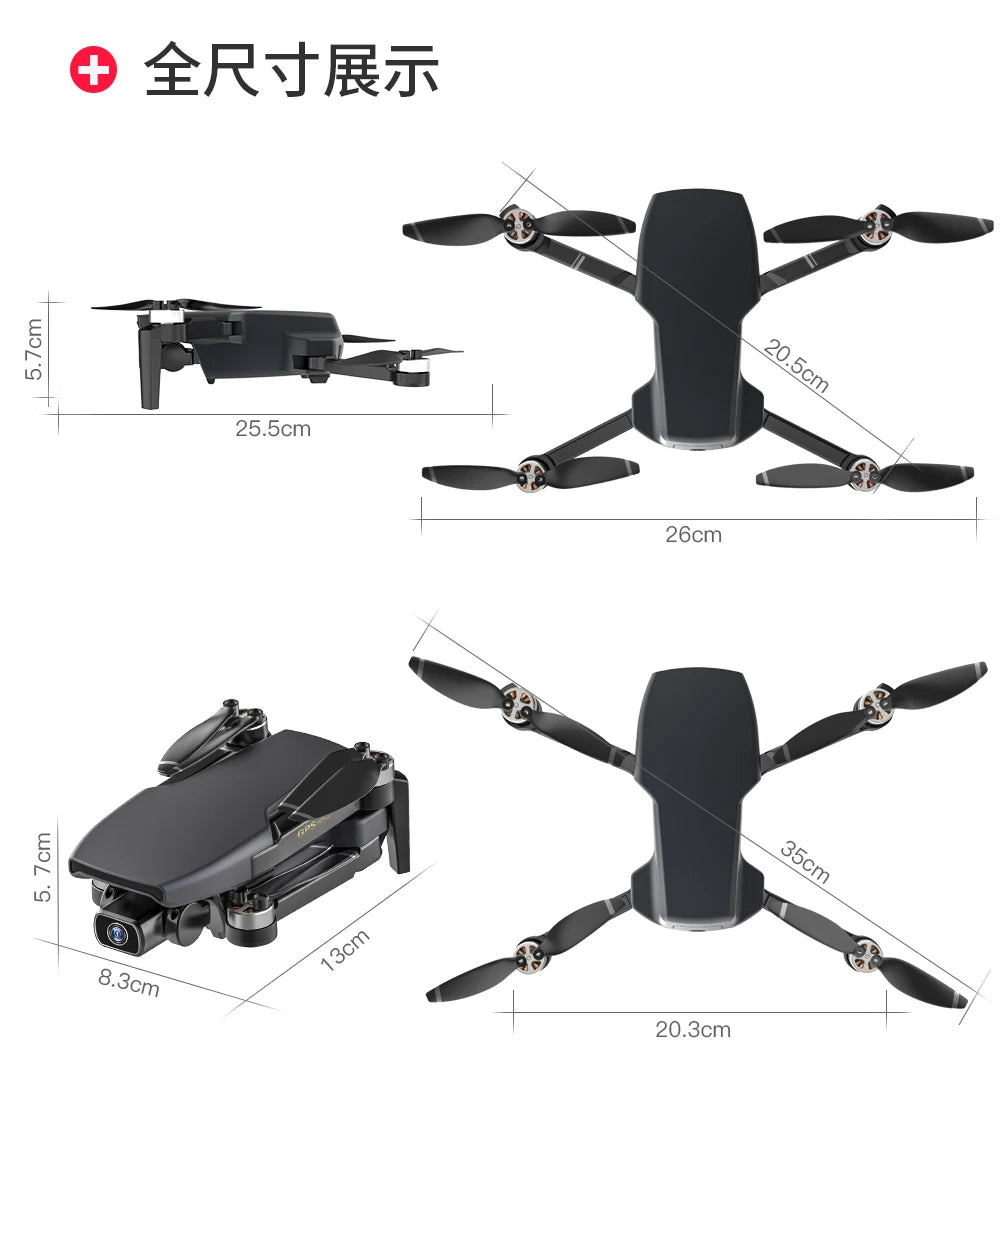 G108 Pro MAx Drone, 1 x SG108 Pro RC Quadcopter x Remote Controller x 7.